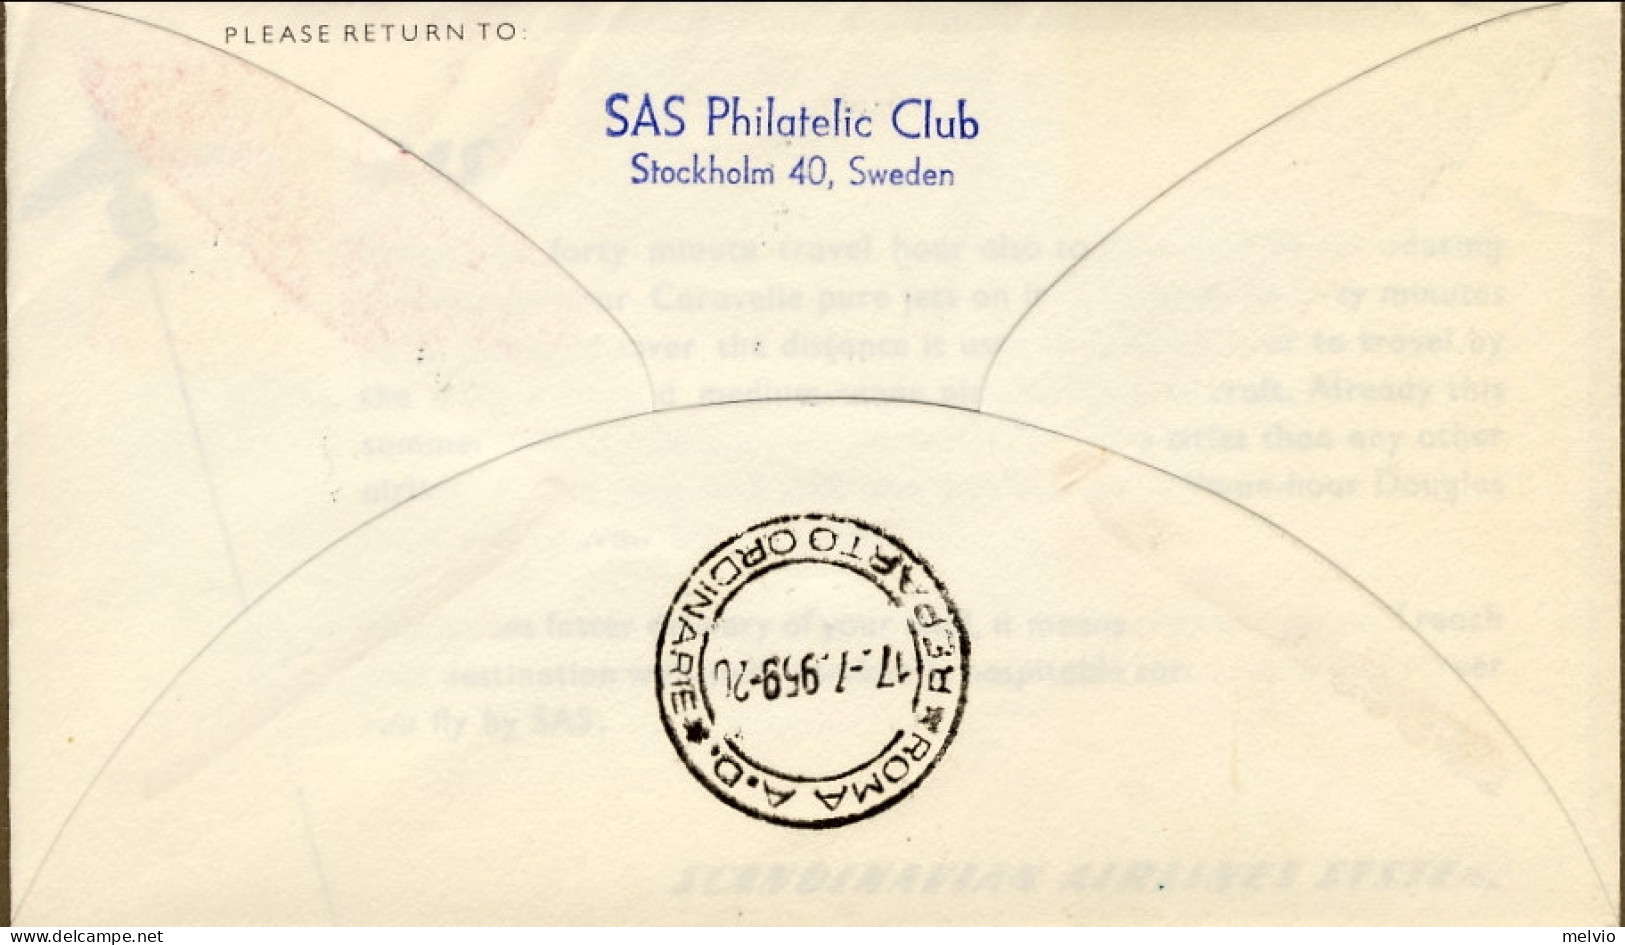 1959-Svezia Bollo Violetto SAS I^volo Caravelle Stoccolma-Roma Del 17 Luglio - Storia Postale